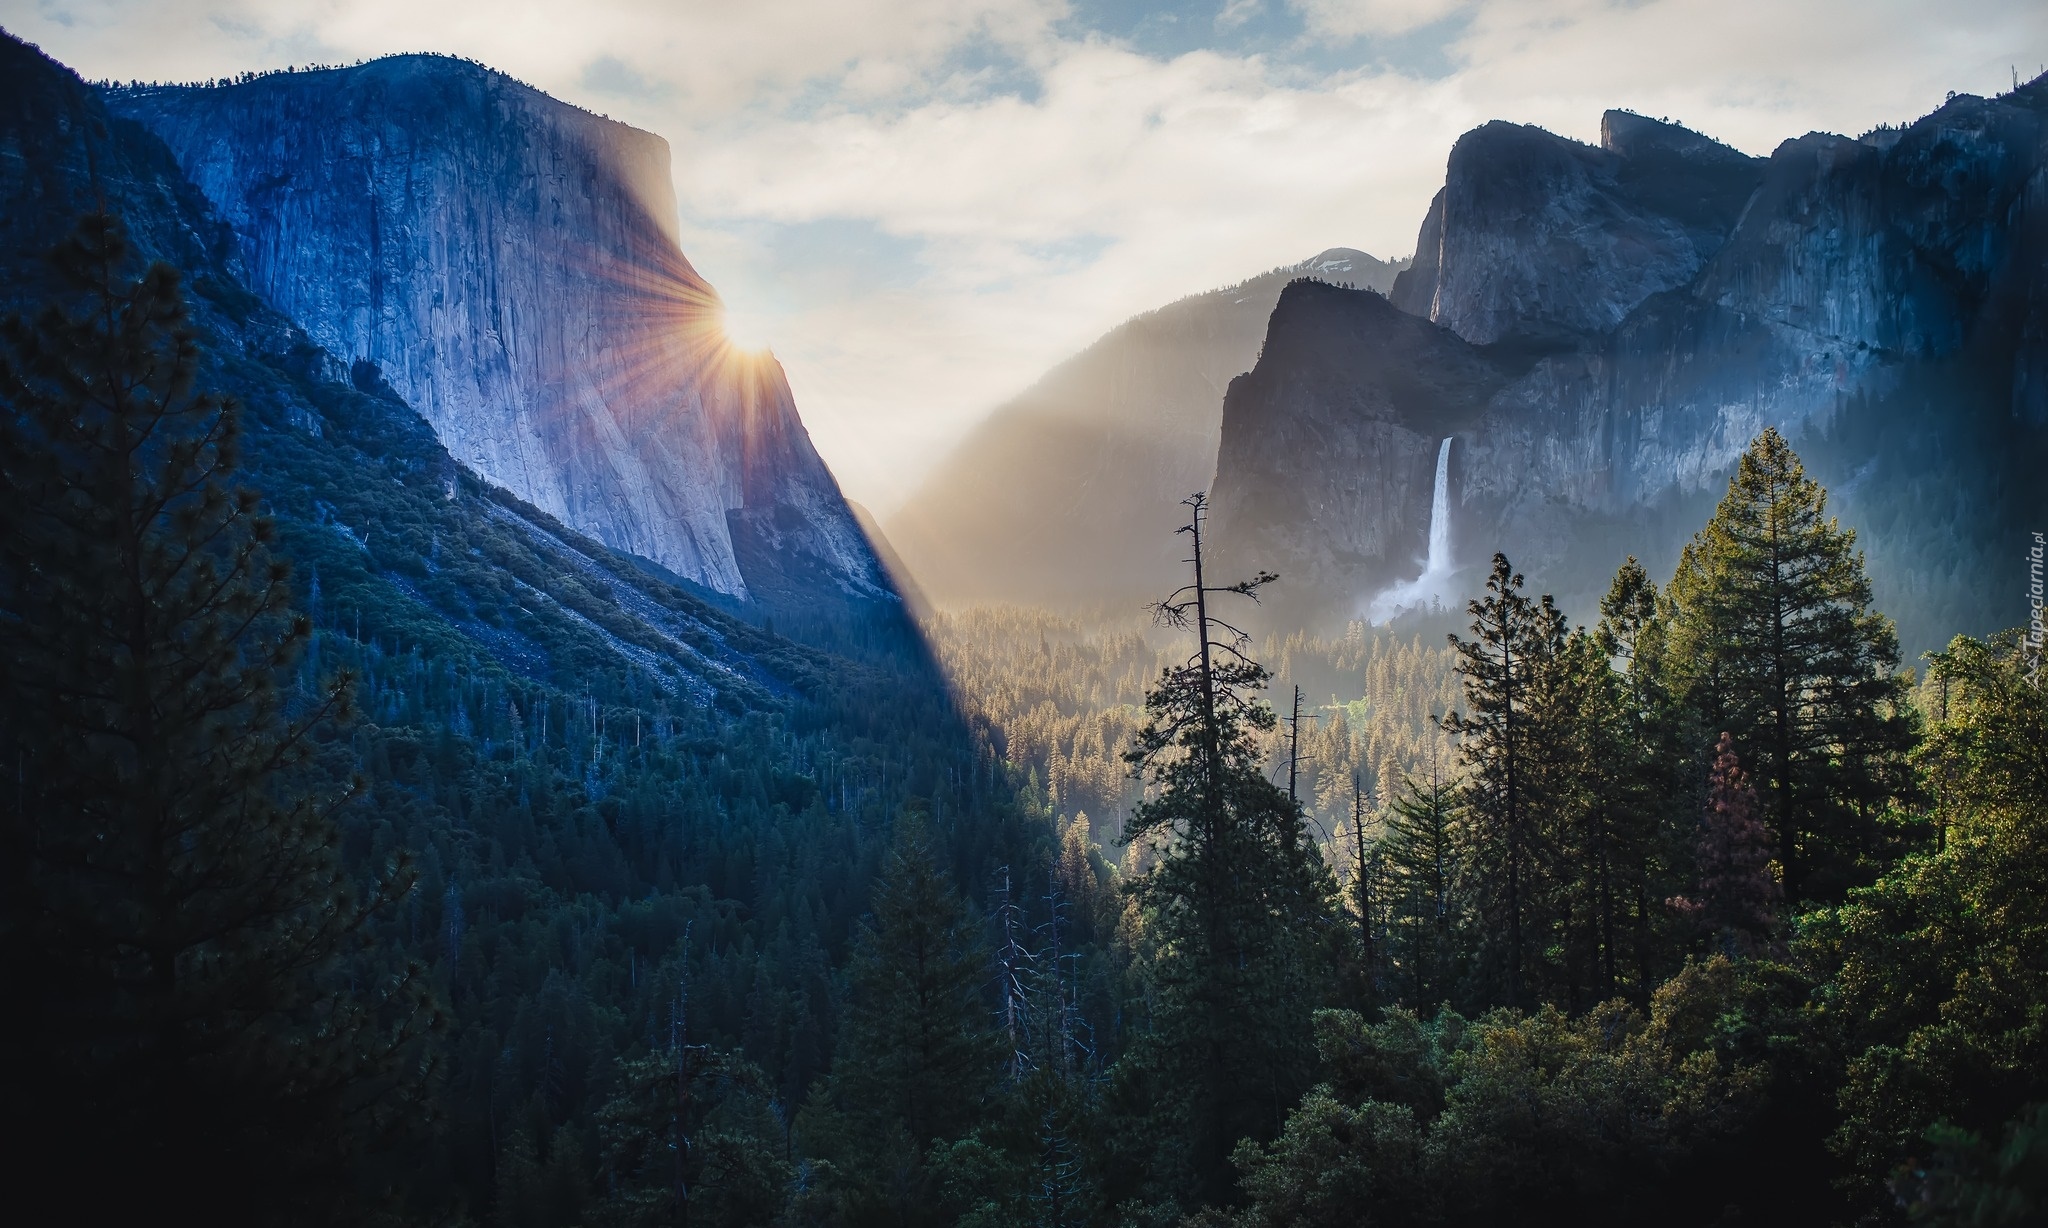 Góry, Wschód słońca, Drzewa, Wodospad Bridalveil Fall, Park Narodowy Yosemite, Kalifornia, Stany Zjednoczone